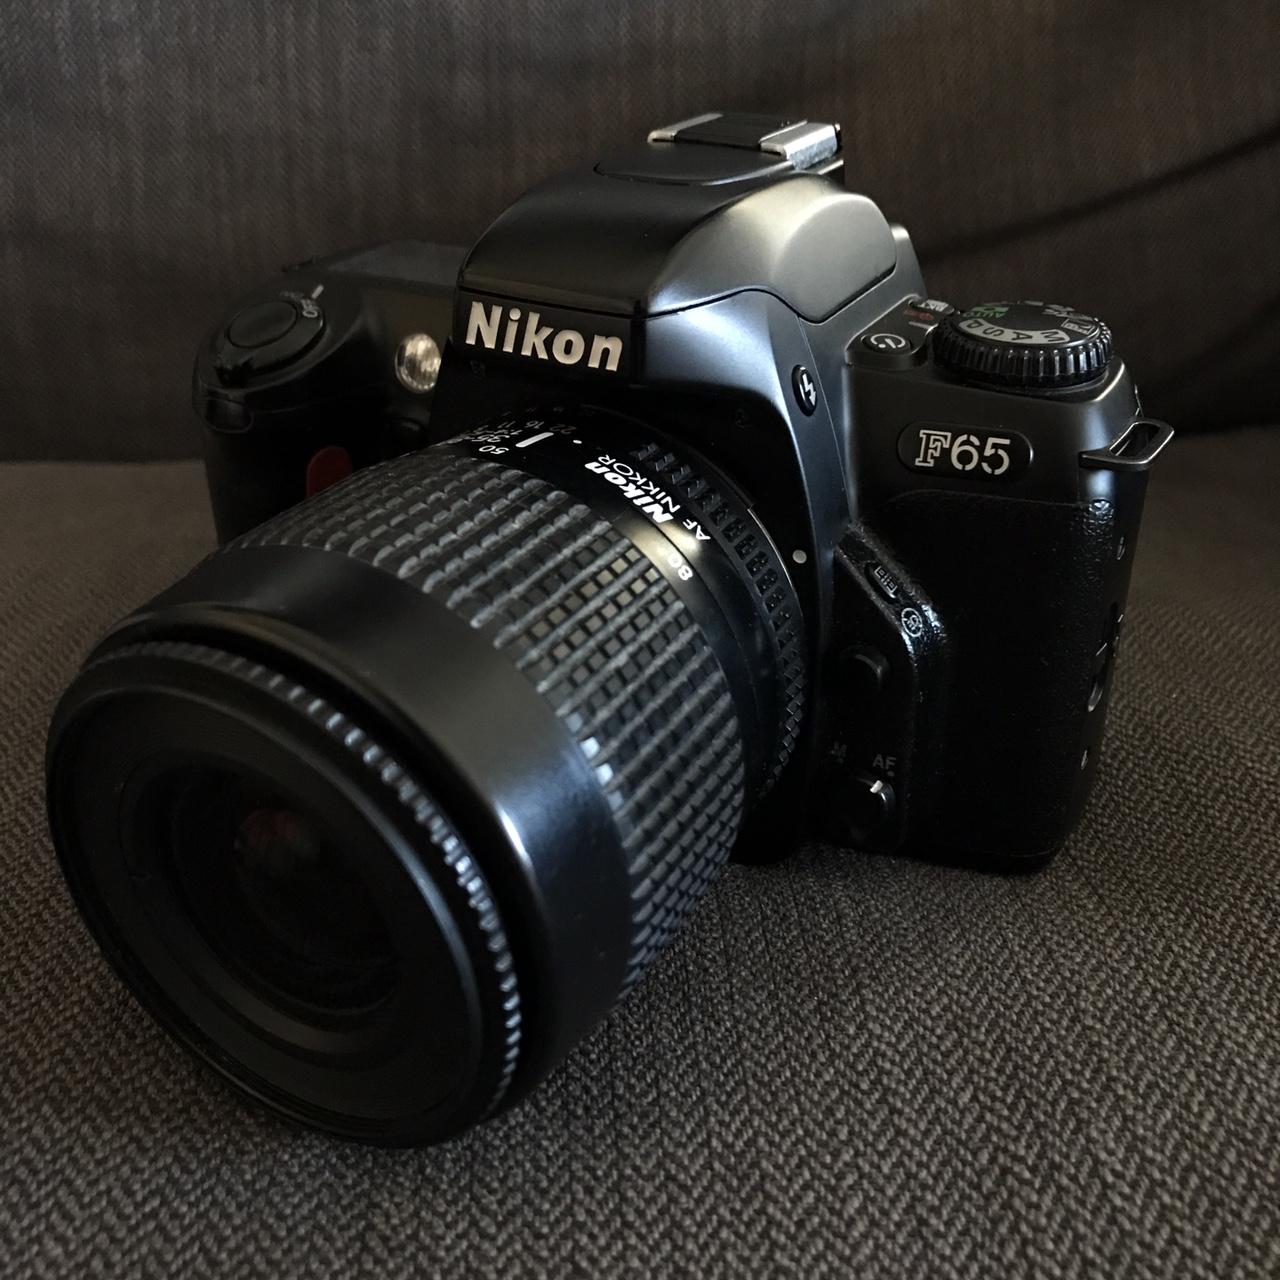 Nikon Cameras-and-accessories (3)